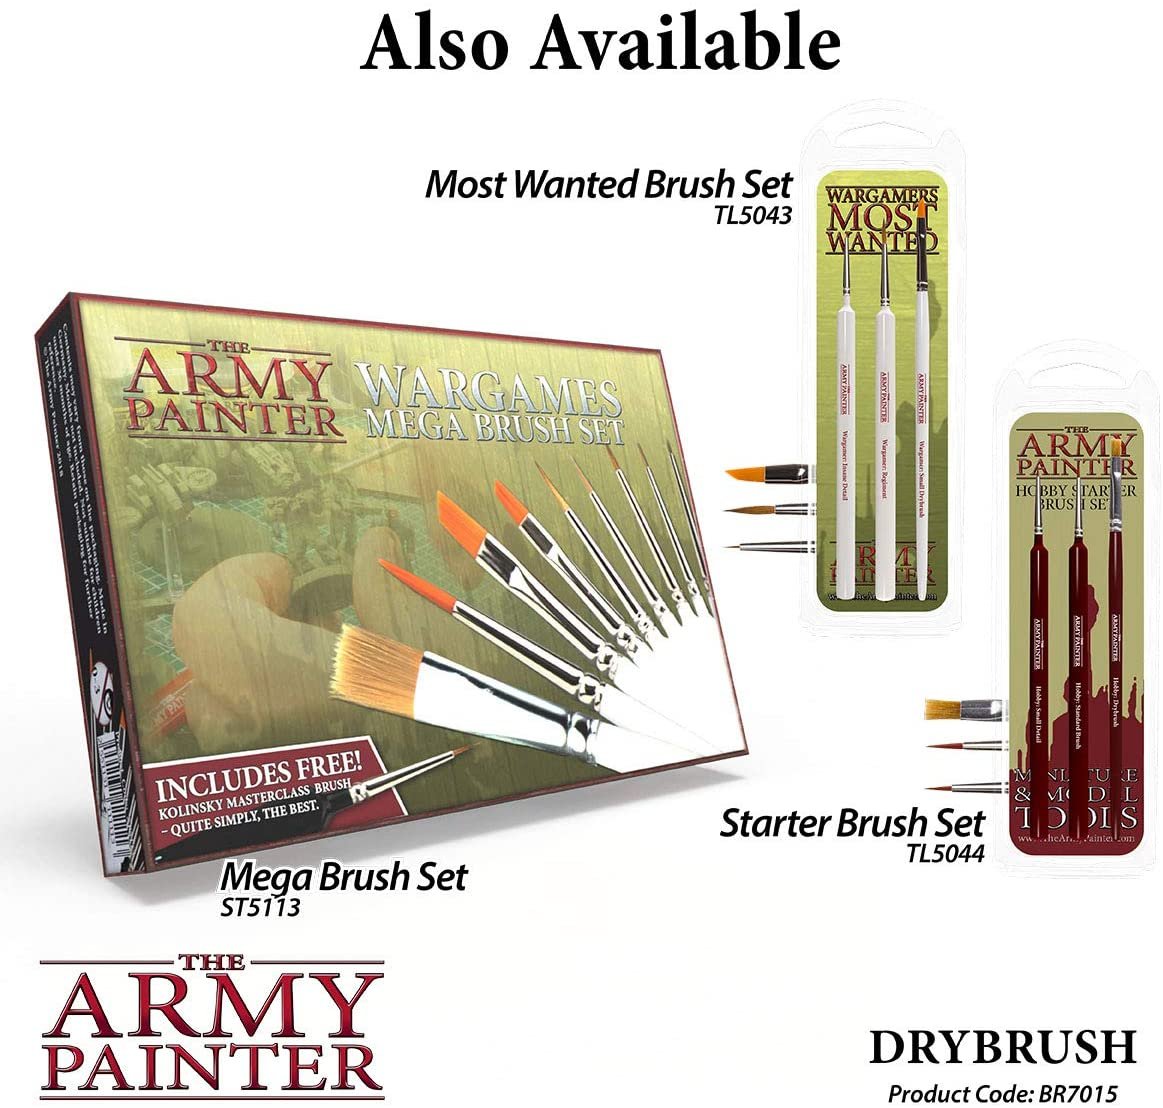 The Army Painter - Hobby Brush: Drybrush